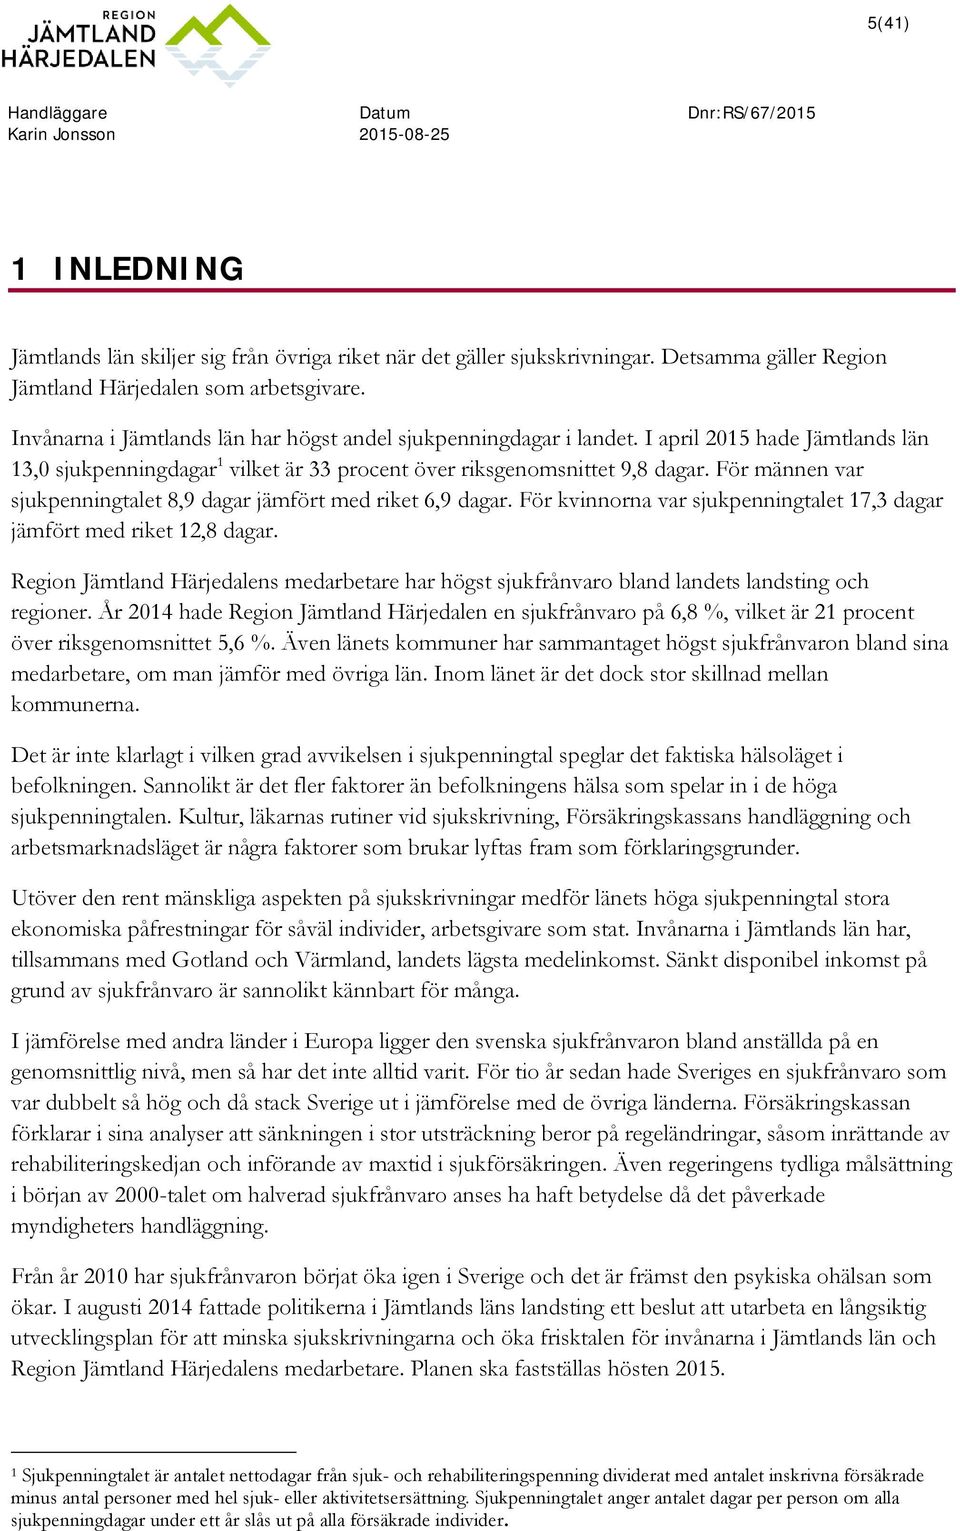 I april 2015 hade Jämtlands län 13,0 sjukpenningdagar 1 vilket är 33 procent över riksgenomsnittet 9,8 dagar. För männen var sjukpenningtalet 8,9 dagar jämfört med riket 6,9 dagar.